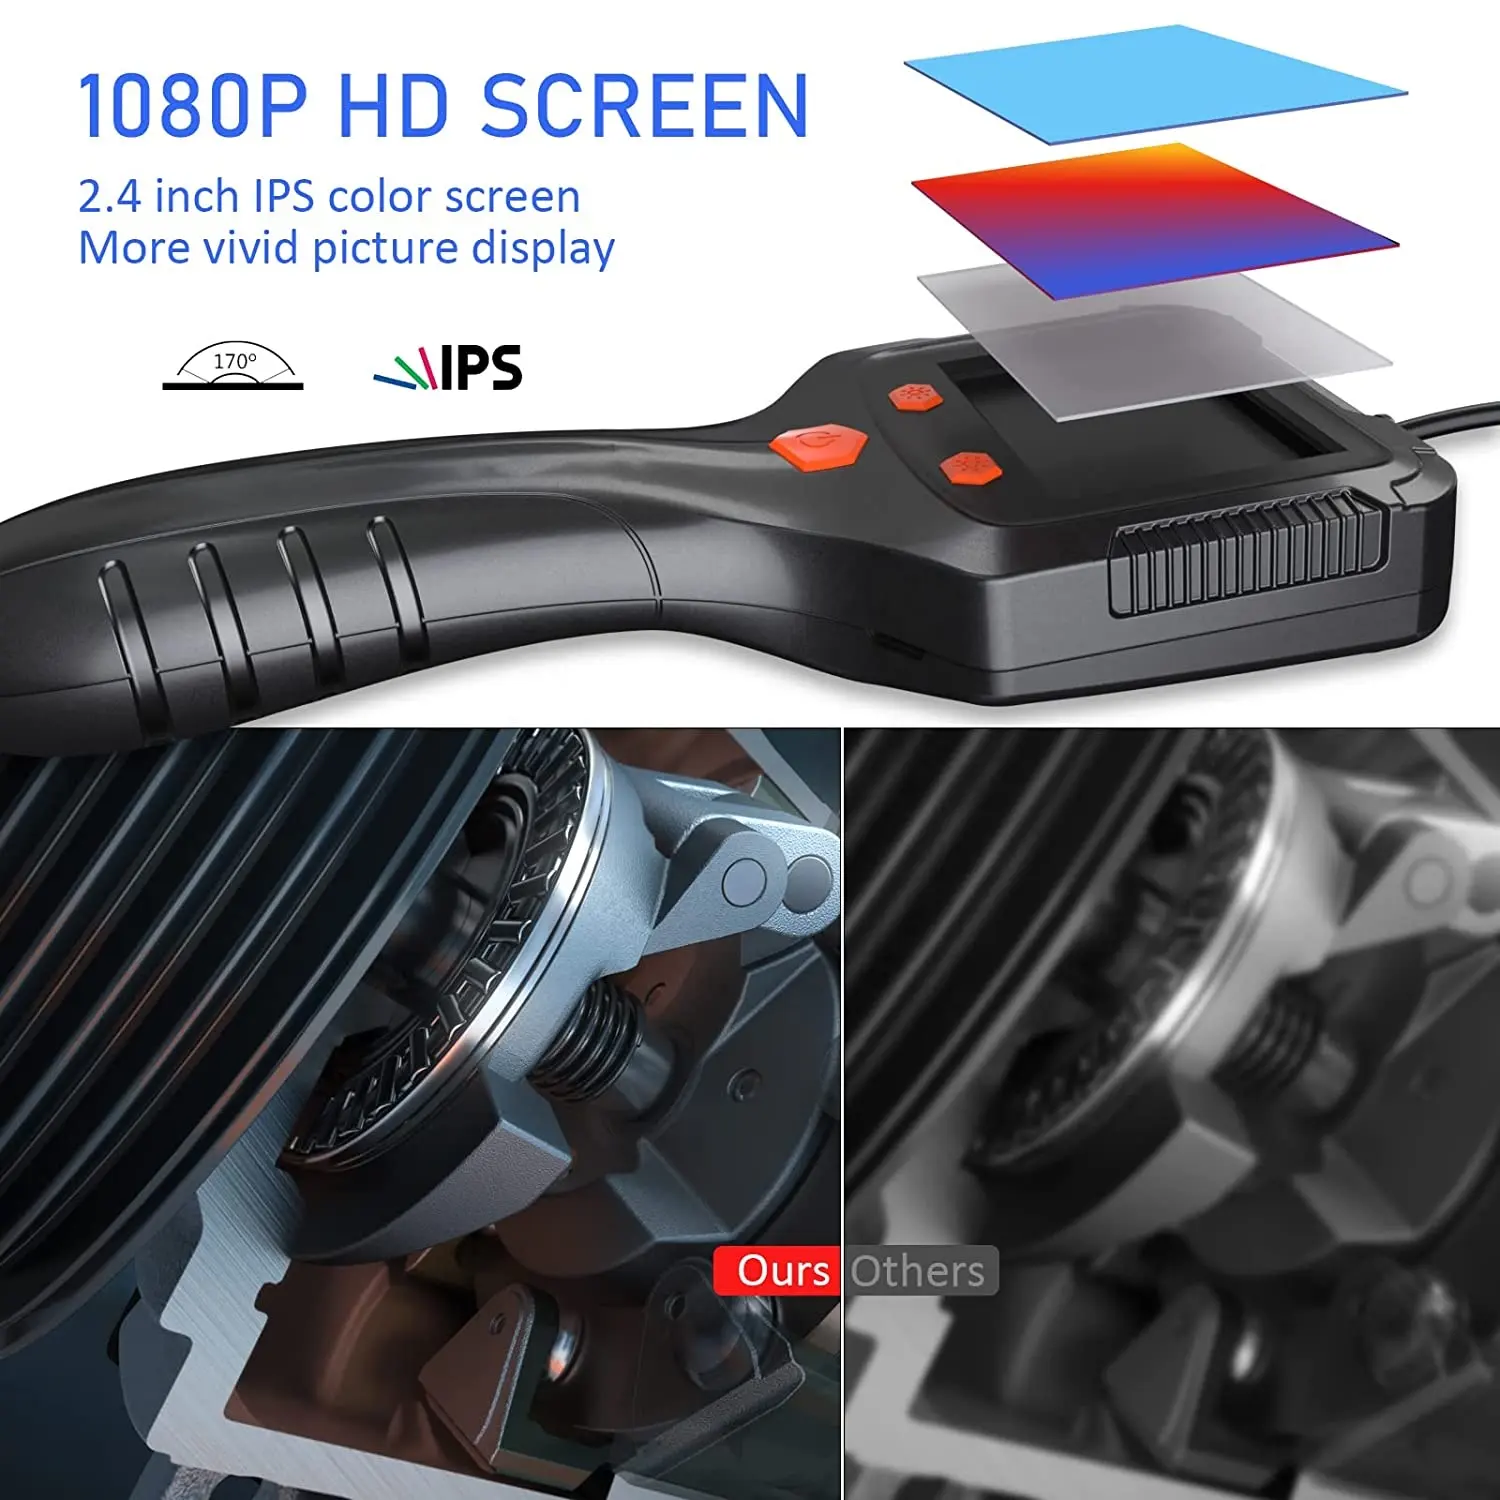 P100กล้องตรวจสอบกึ่งแข็ง2MP HD WiFi borescope 2.4in หน้าจอ IPS กล้องส่องบอร์สโคปวิดีโอหน้าจอ IPS พร้อมสายม้วน